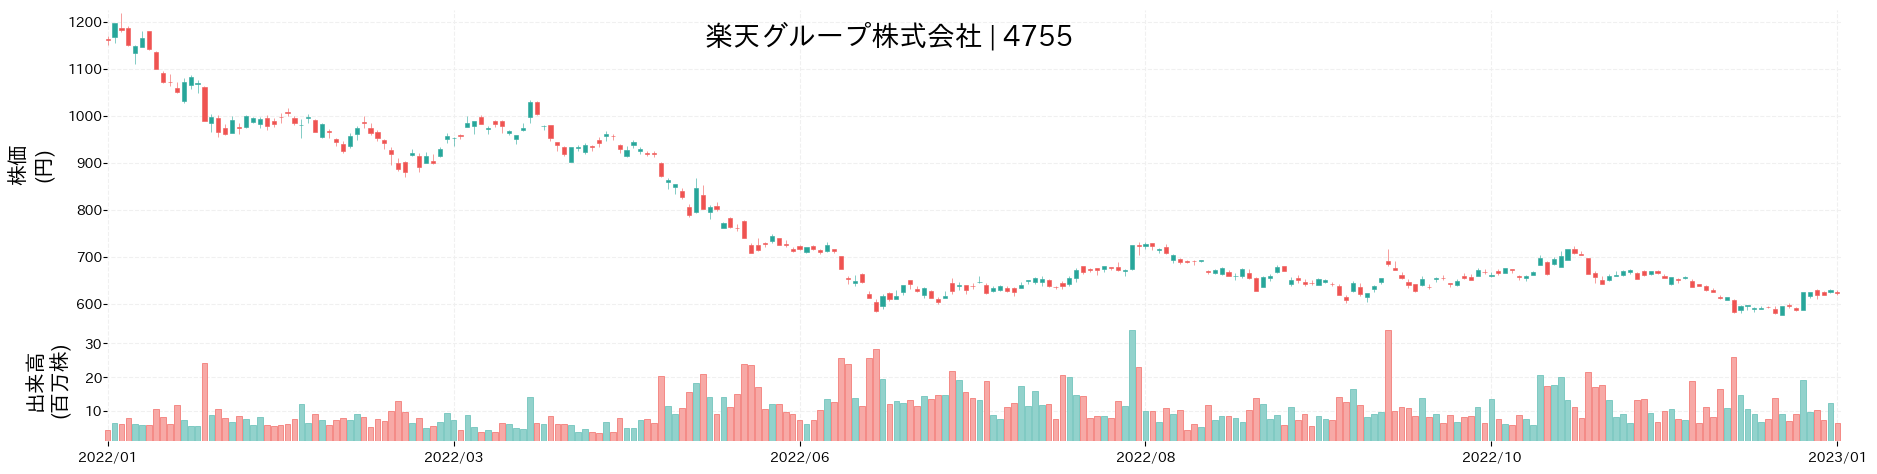 楽天グループの株価推移(2022)